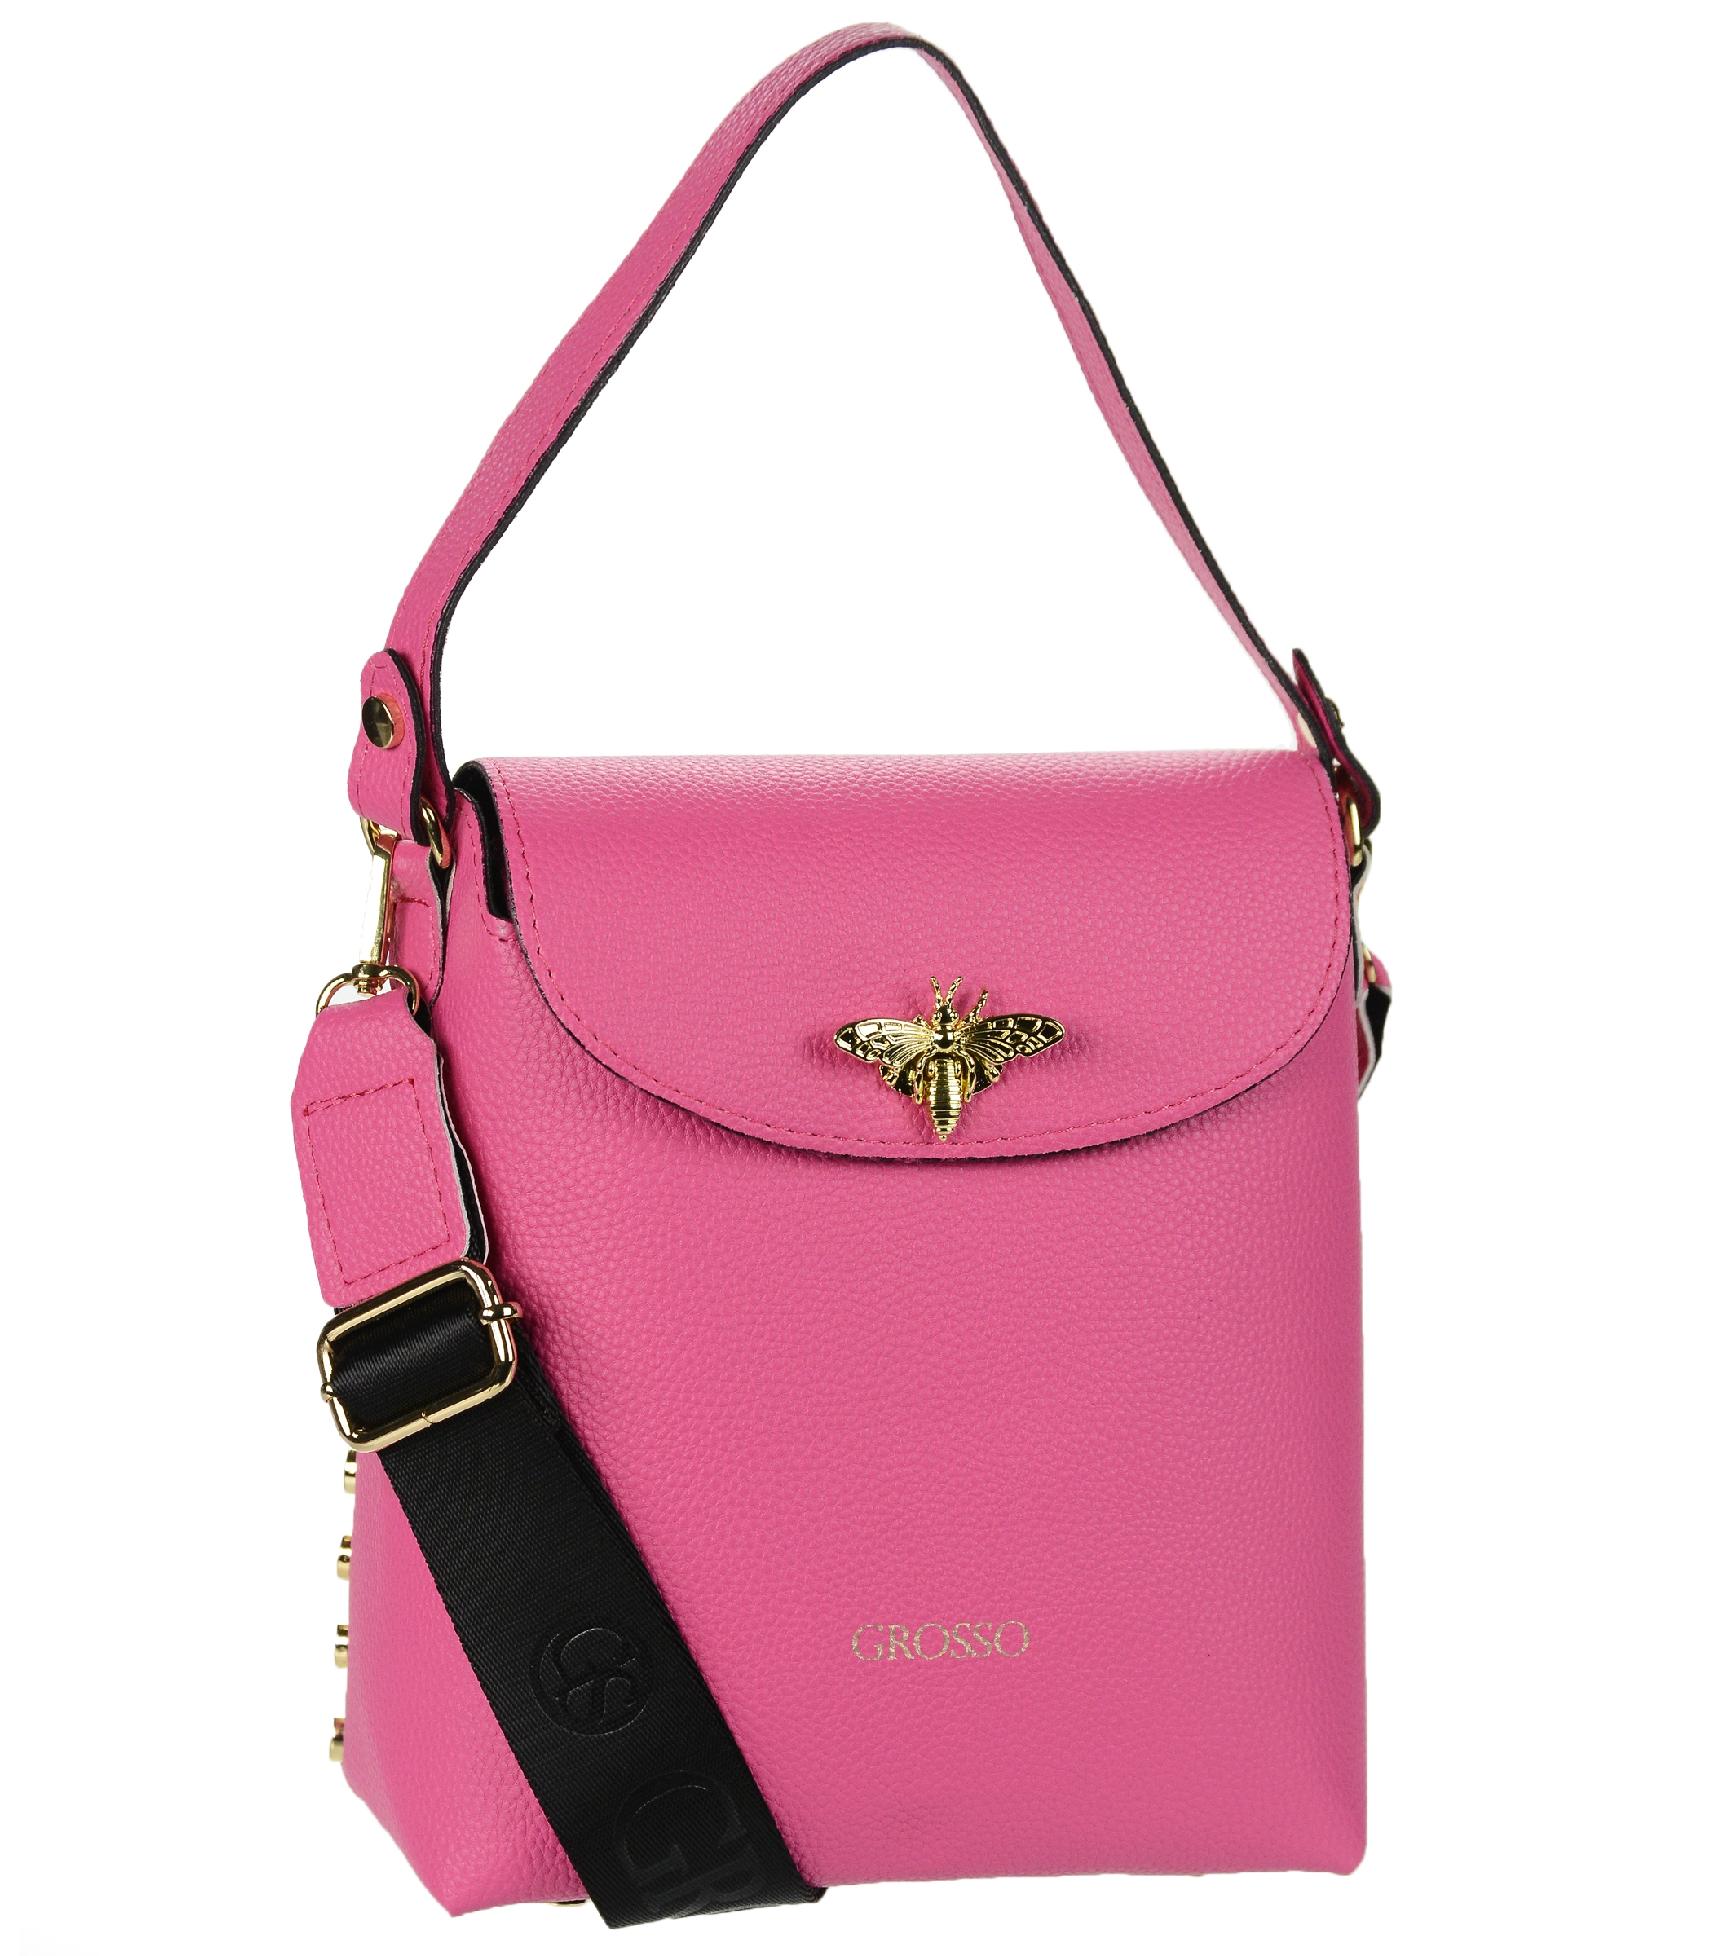 GROSSO štýlová ružová kabelka so zlatými doplnkami VERA pink